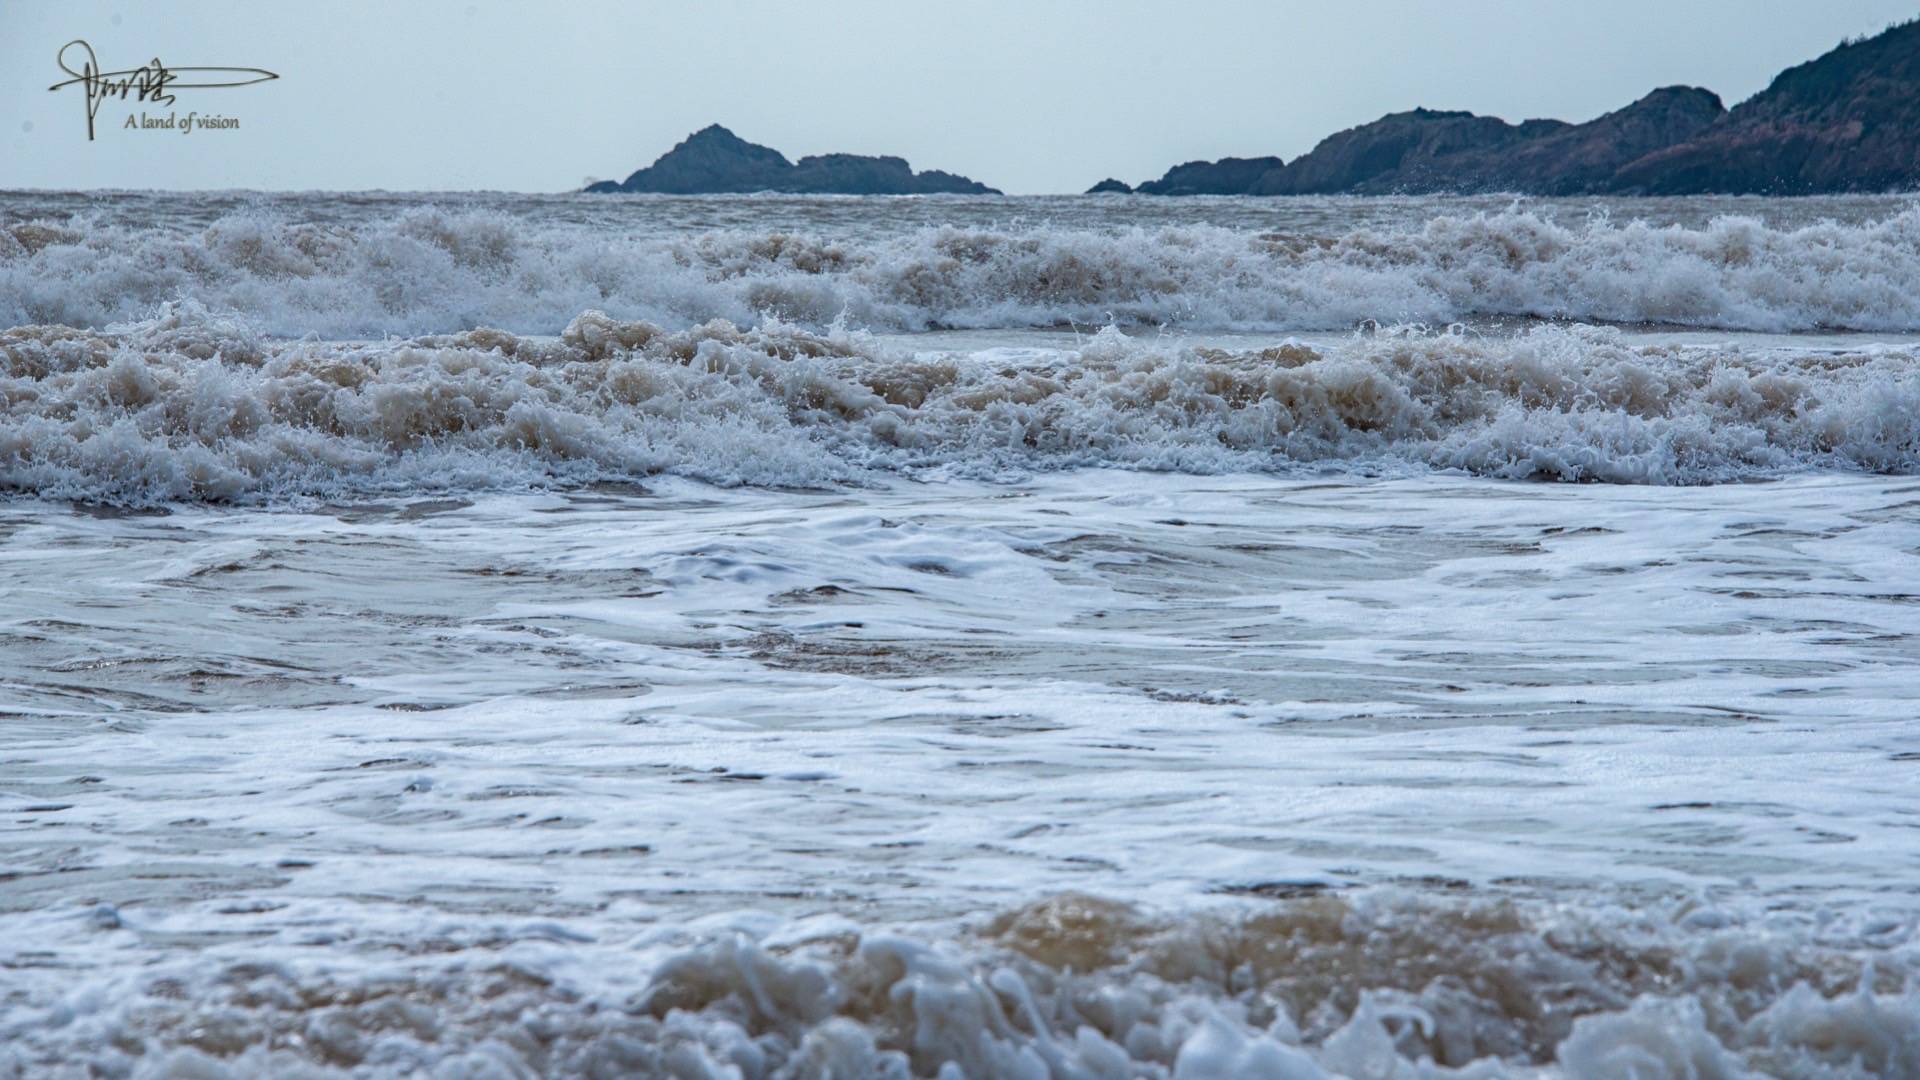 浪花拍打着沙滩 是朱家尖海边的日常风景 搜狐大视野 搜狐新闻